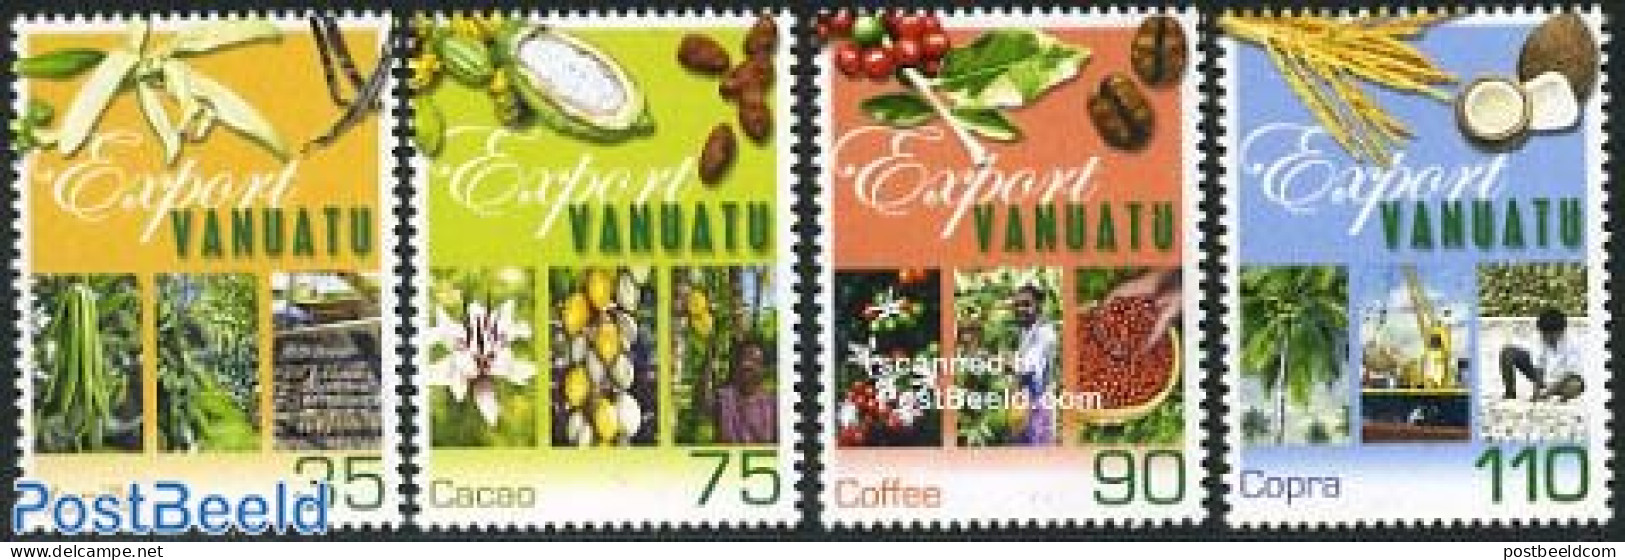 Vanuatu 2001 Export 4v, Mint NH, Various - Agriculture - Export & Trade - Agricultura